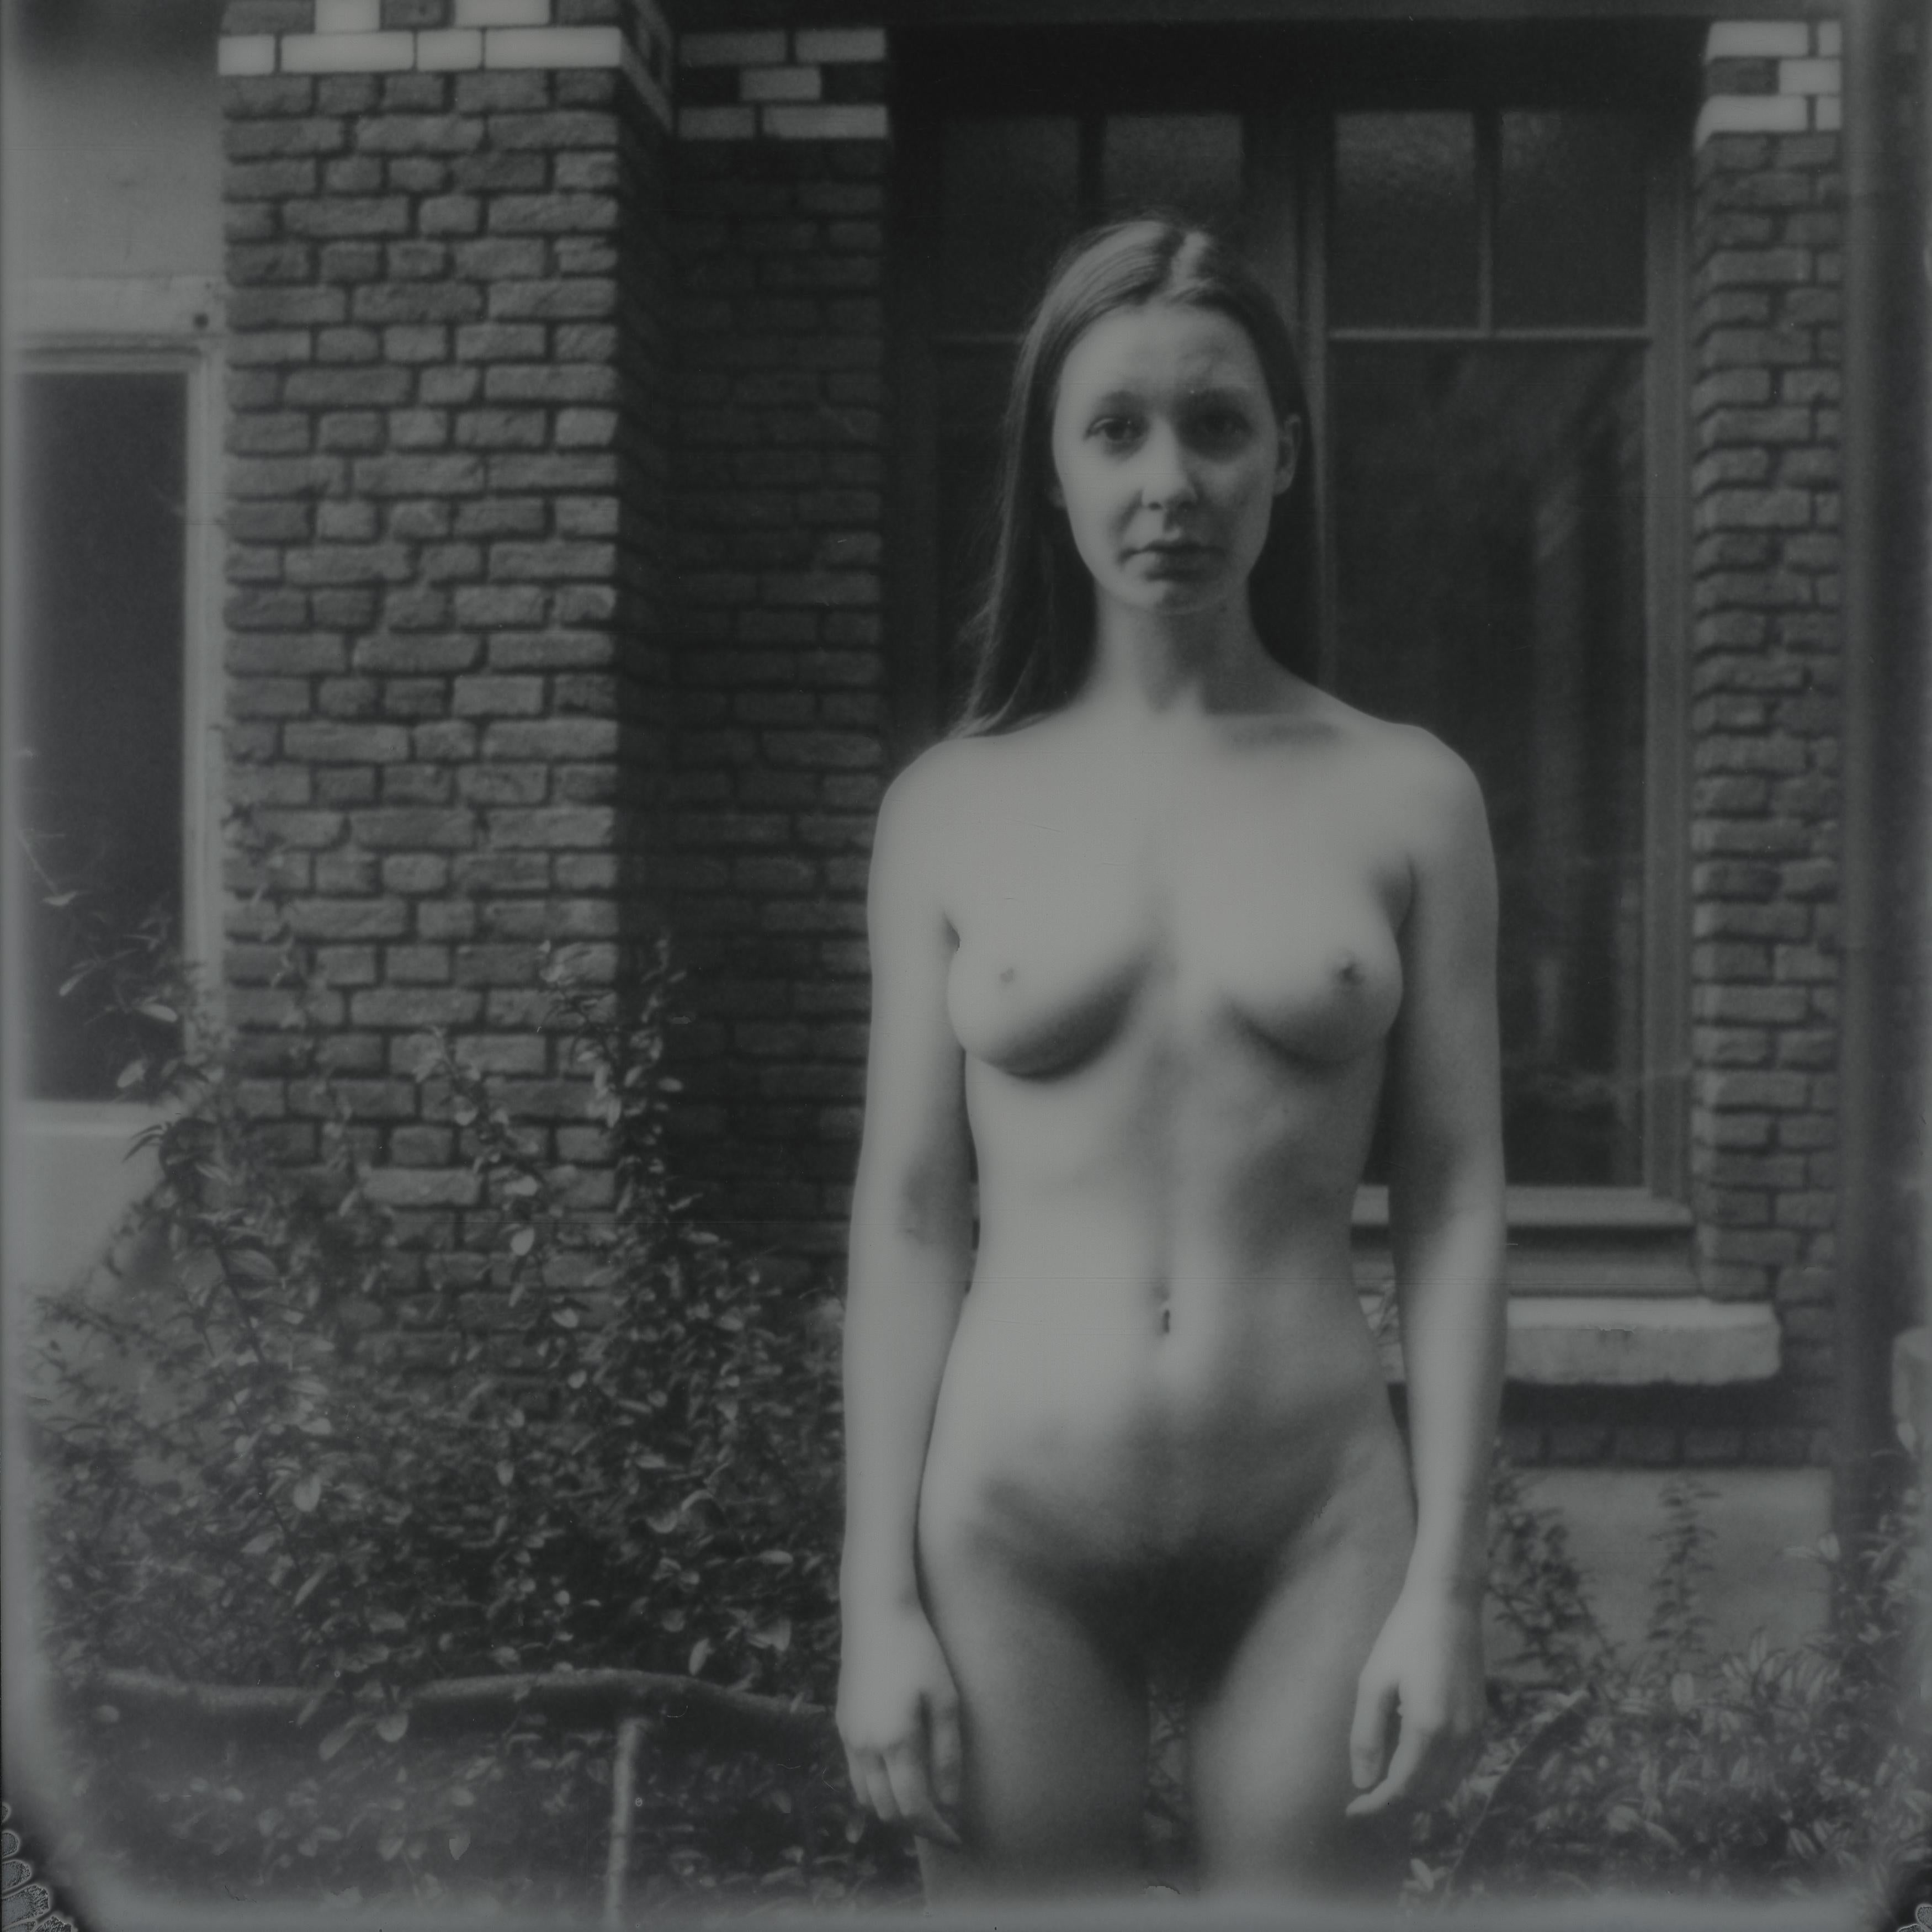 Nude Photograph Kirsten Thys van den Audenaerde - Je ne suis heureuse que lorsqu'il pleut - Contemporain, Nu, Femme, Polaroid, 21ème siècle